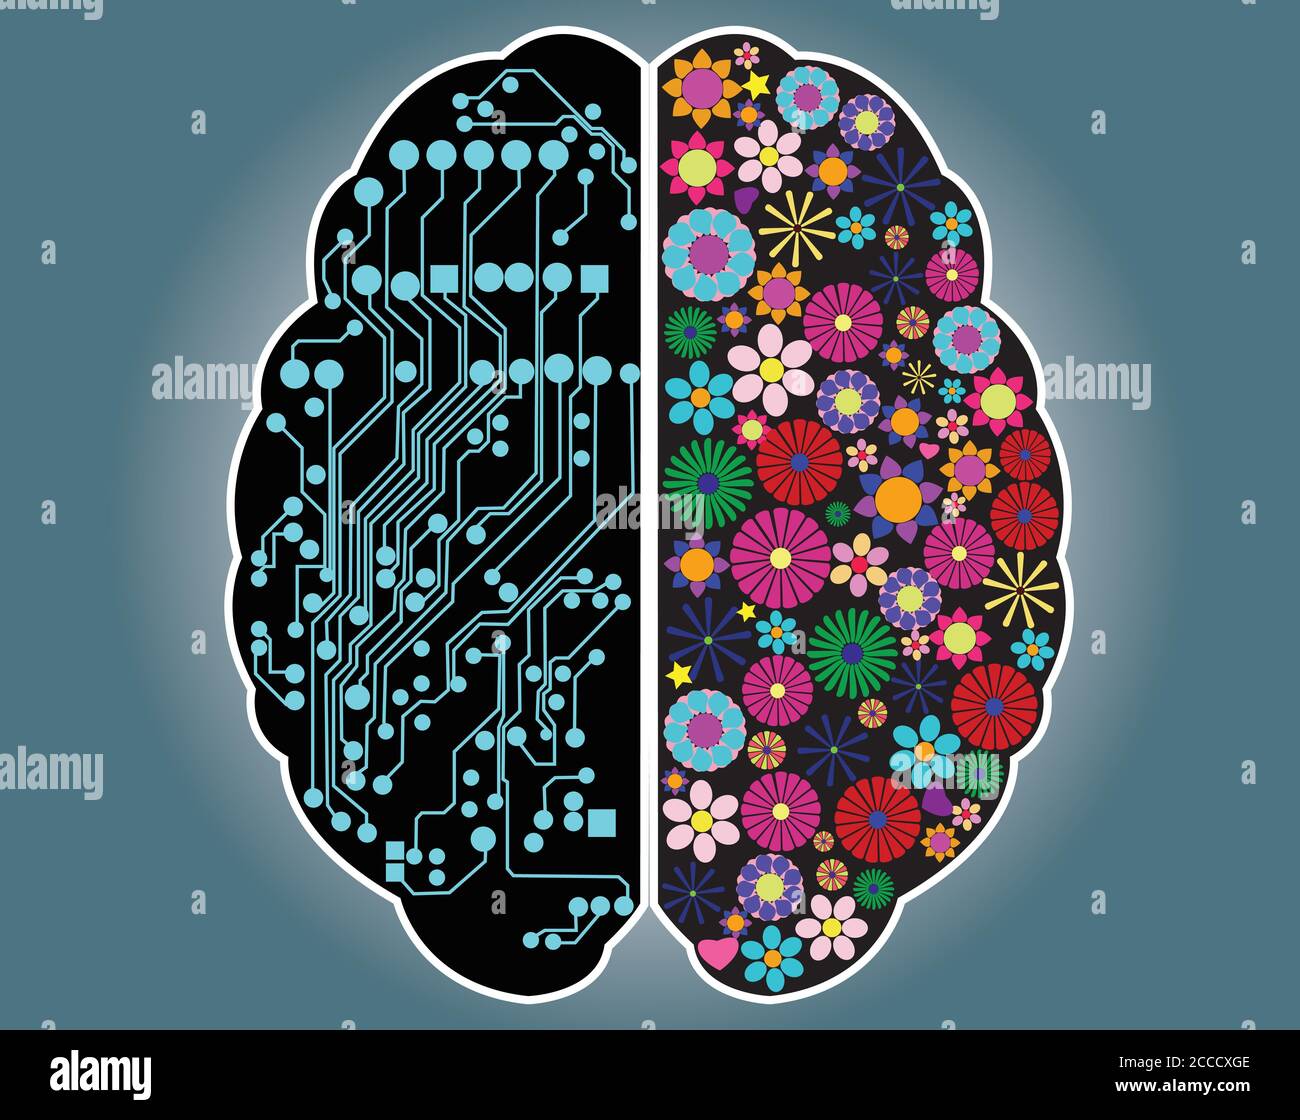 Lato sinistro e destro del cervello, logica e creatività, vettore Illustrazione Vettoriale